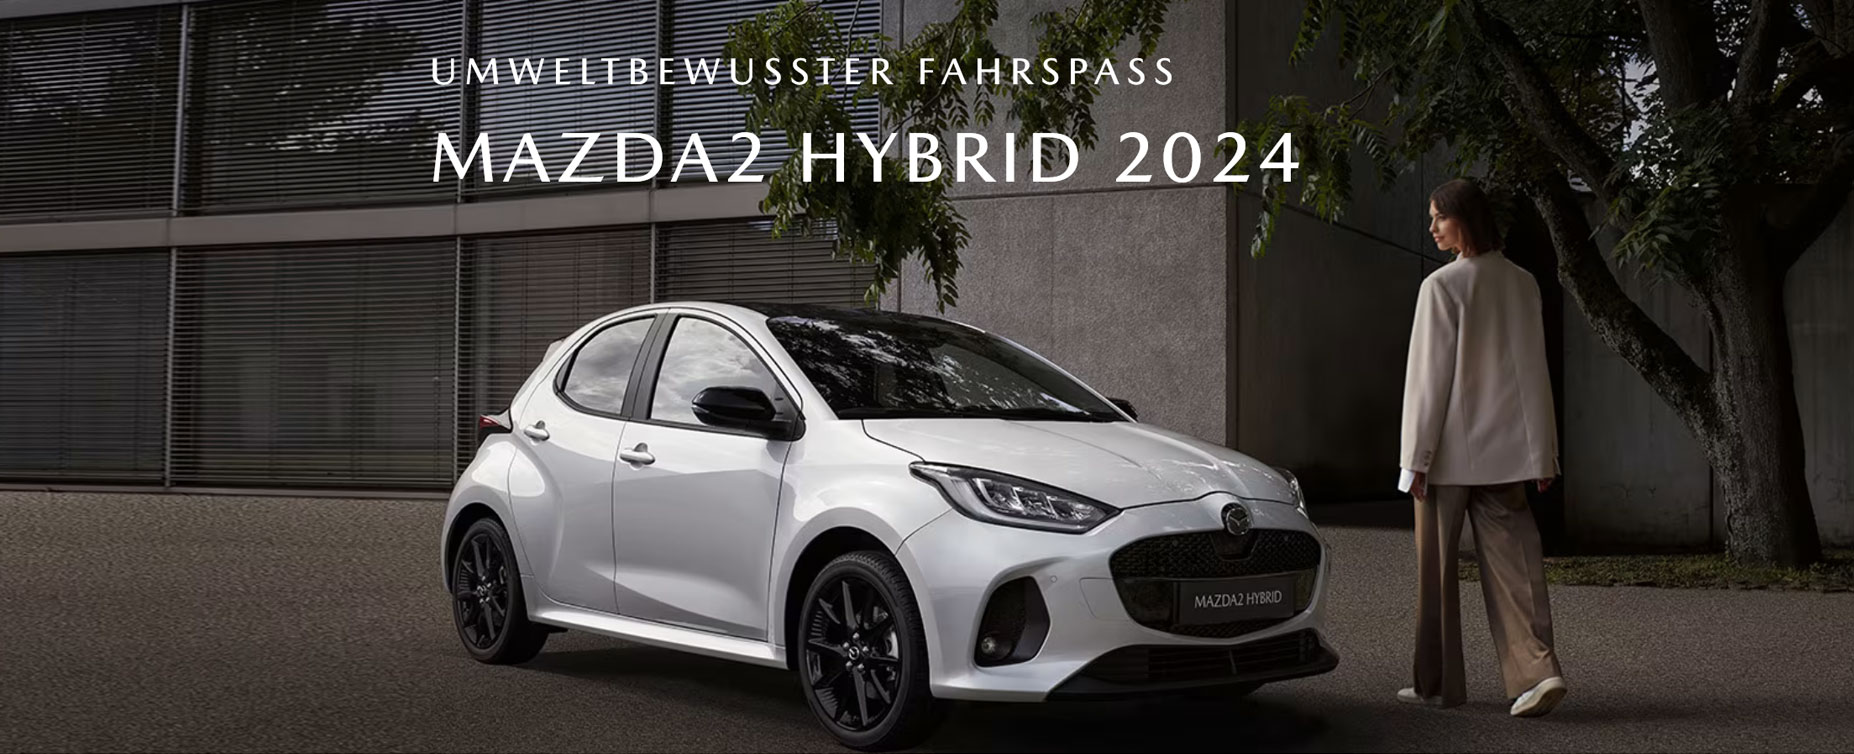 Mazda 2 Hybrid 2024